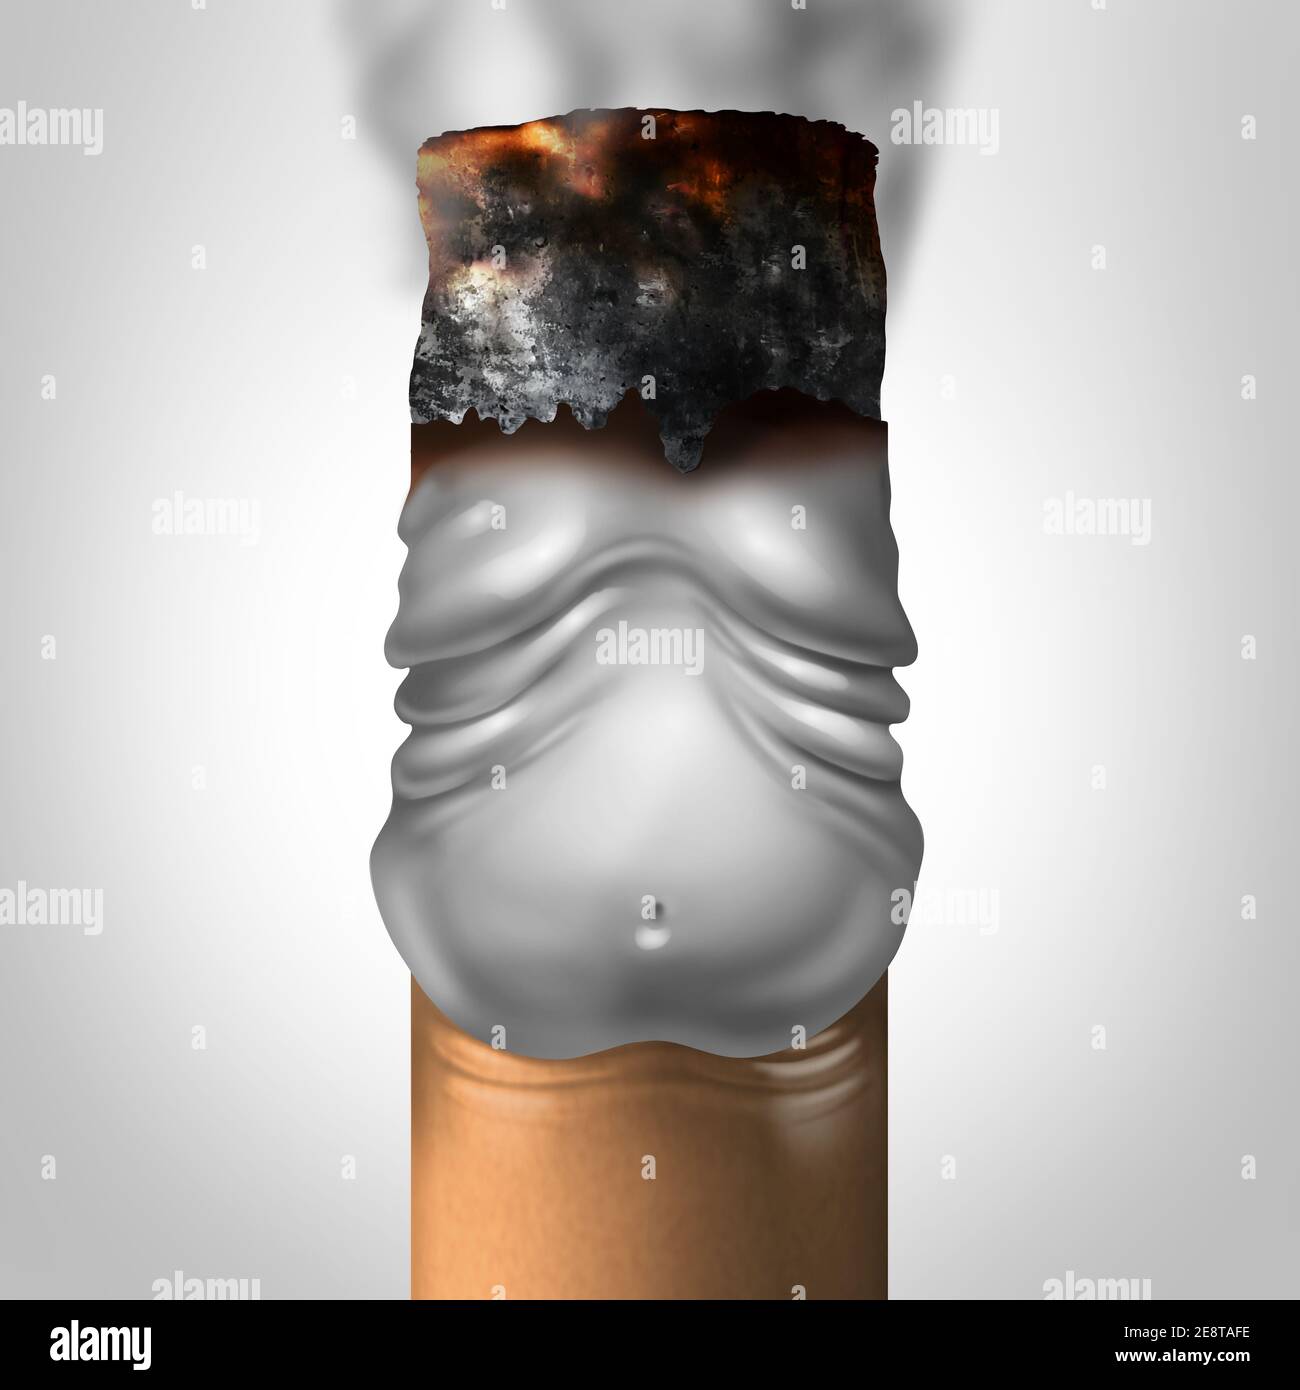 Rauchen und Adipositas oder Raucher Gewichtszunahme als medizinisches Konzept mit einer brennenden Zigarette als übergewichtiges Symbol der Nikotinsucht geformt. Stockfoto